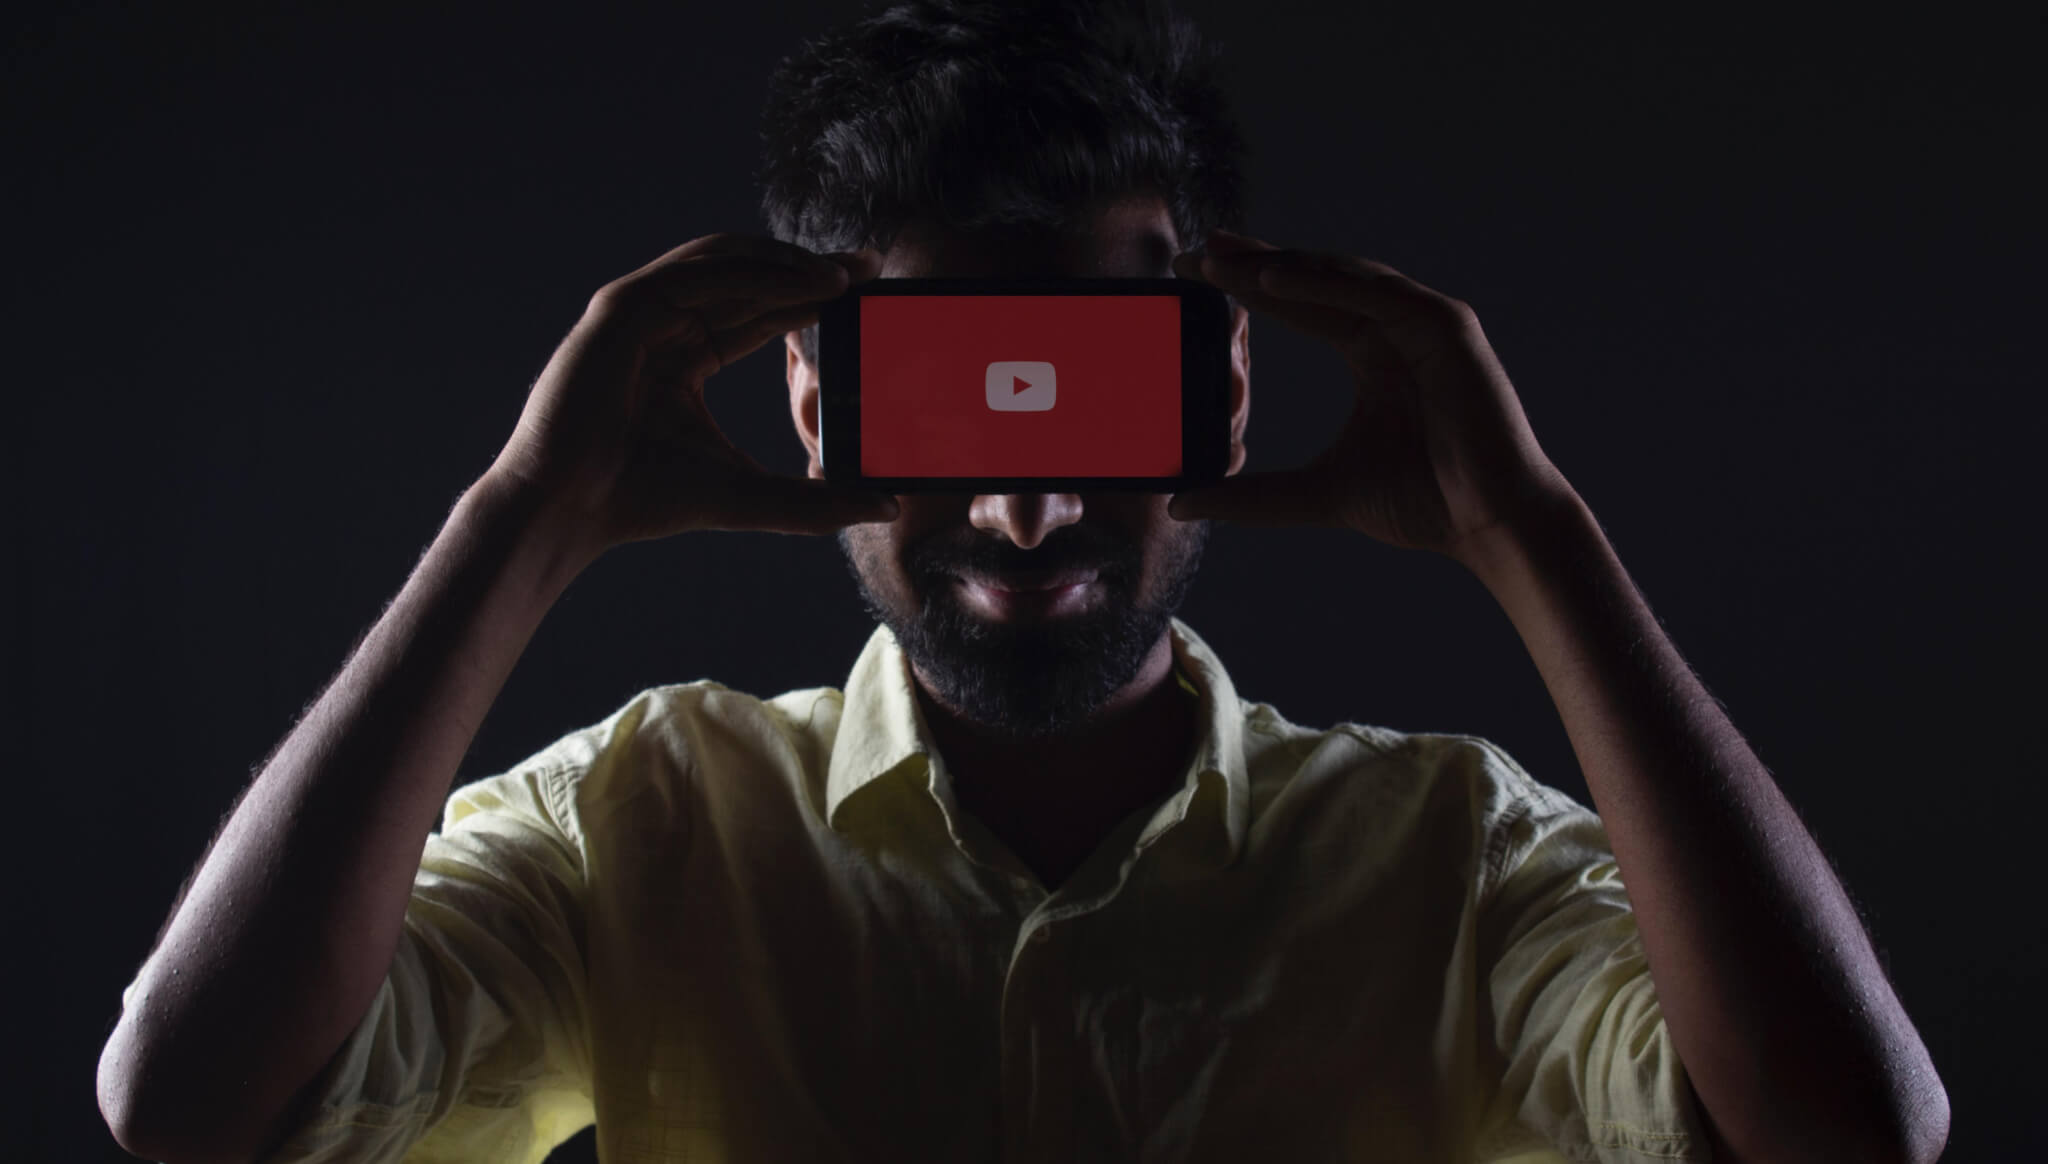 13. mars 2020-YouTube - En dyptgående workshop hvor vi utforsker alle sider av verdens nest, største søkemotor YouTube